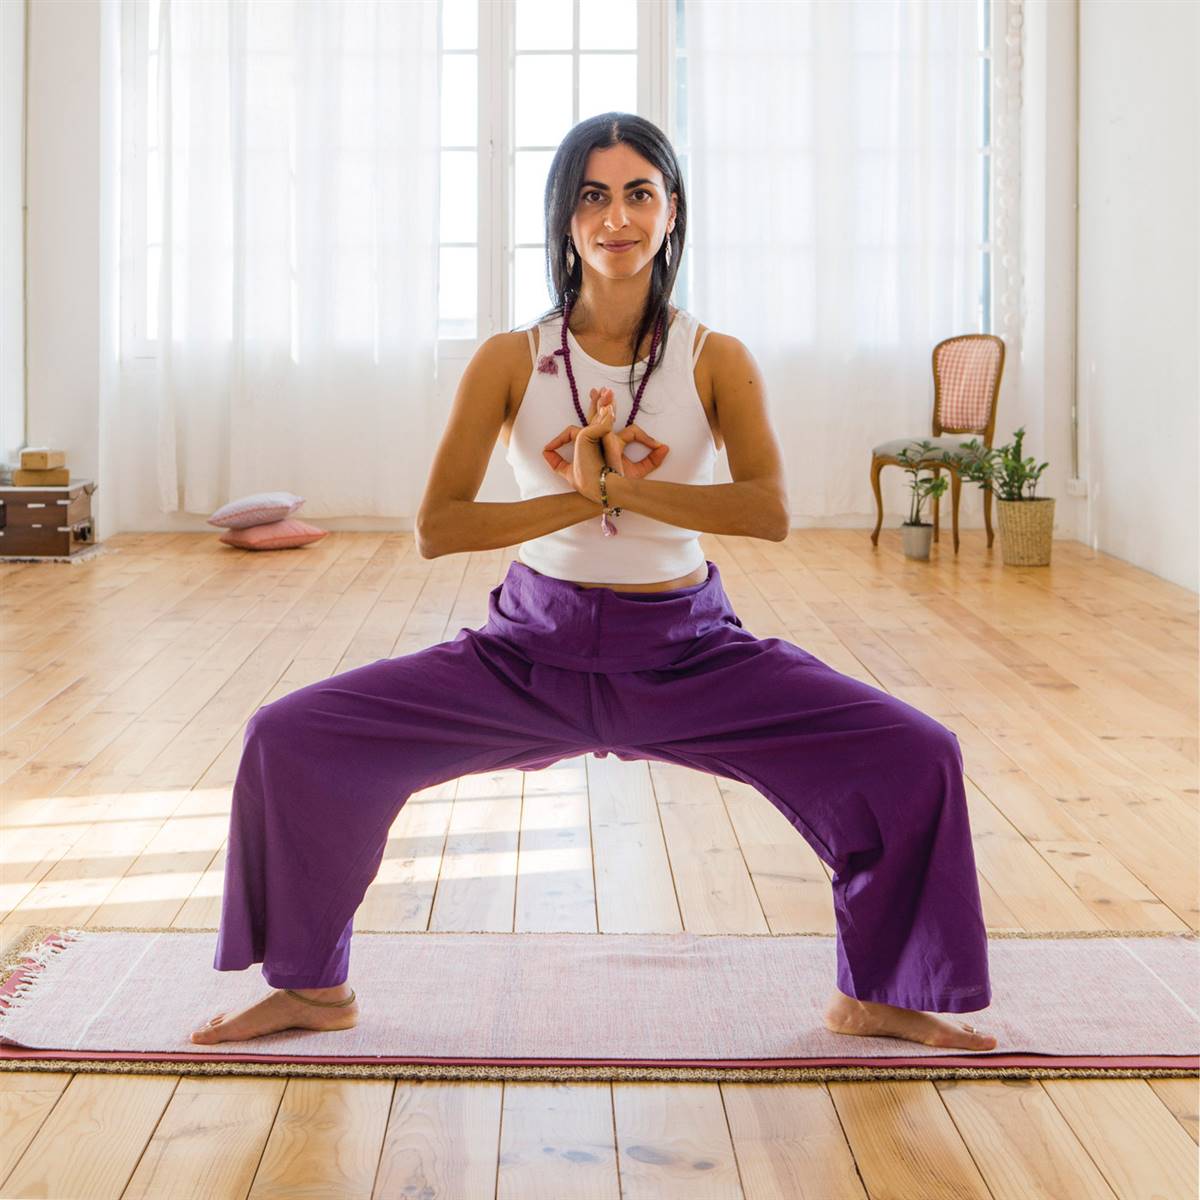 Aprende qué ejercicios de yoga puedes hacer en tu casa, ¡empieza hoy!